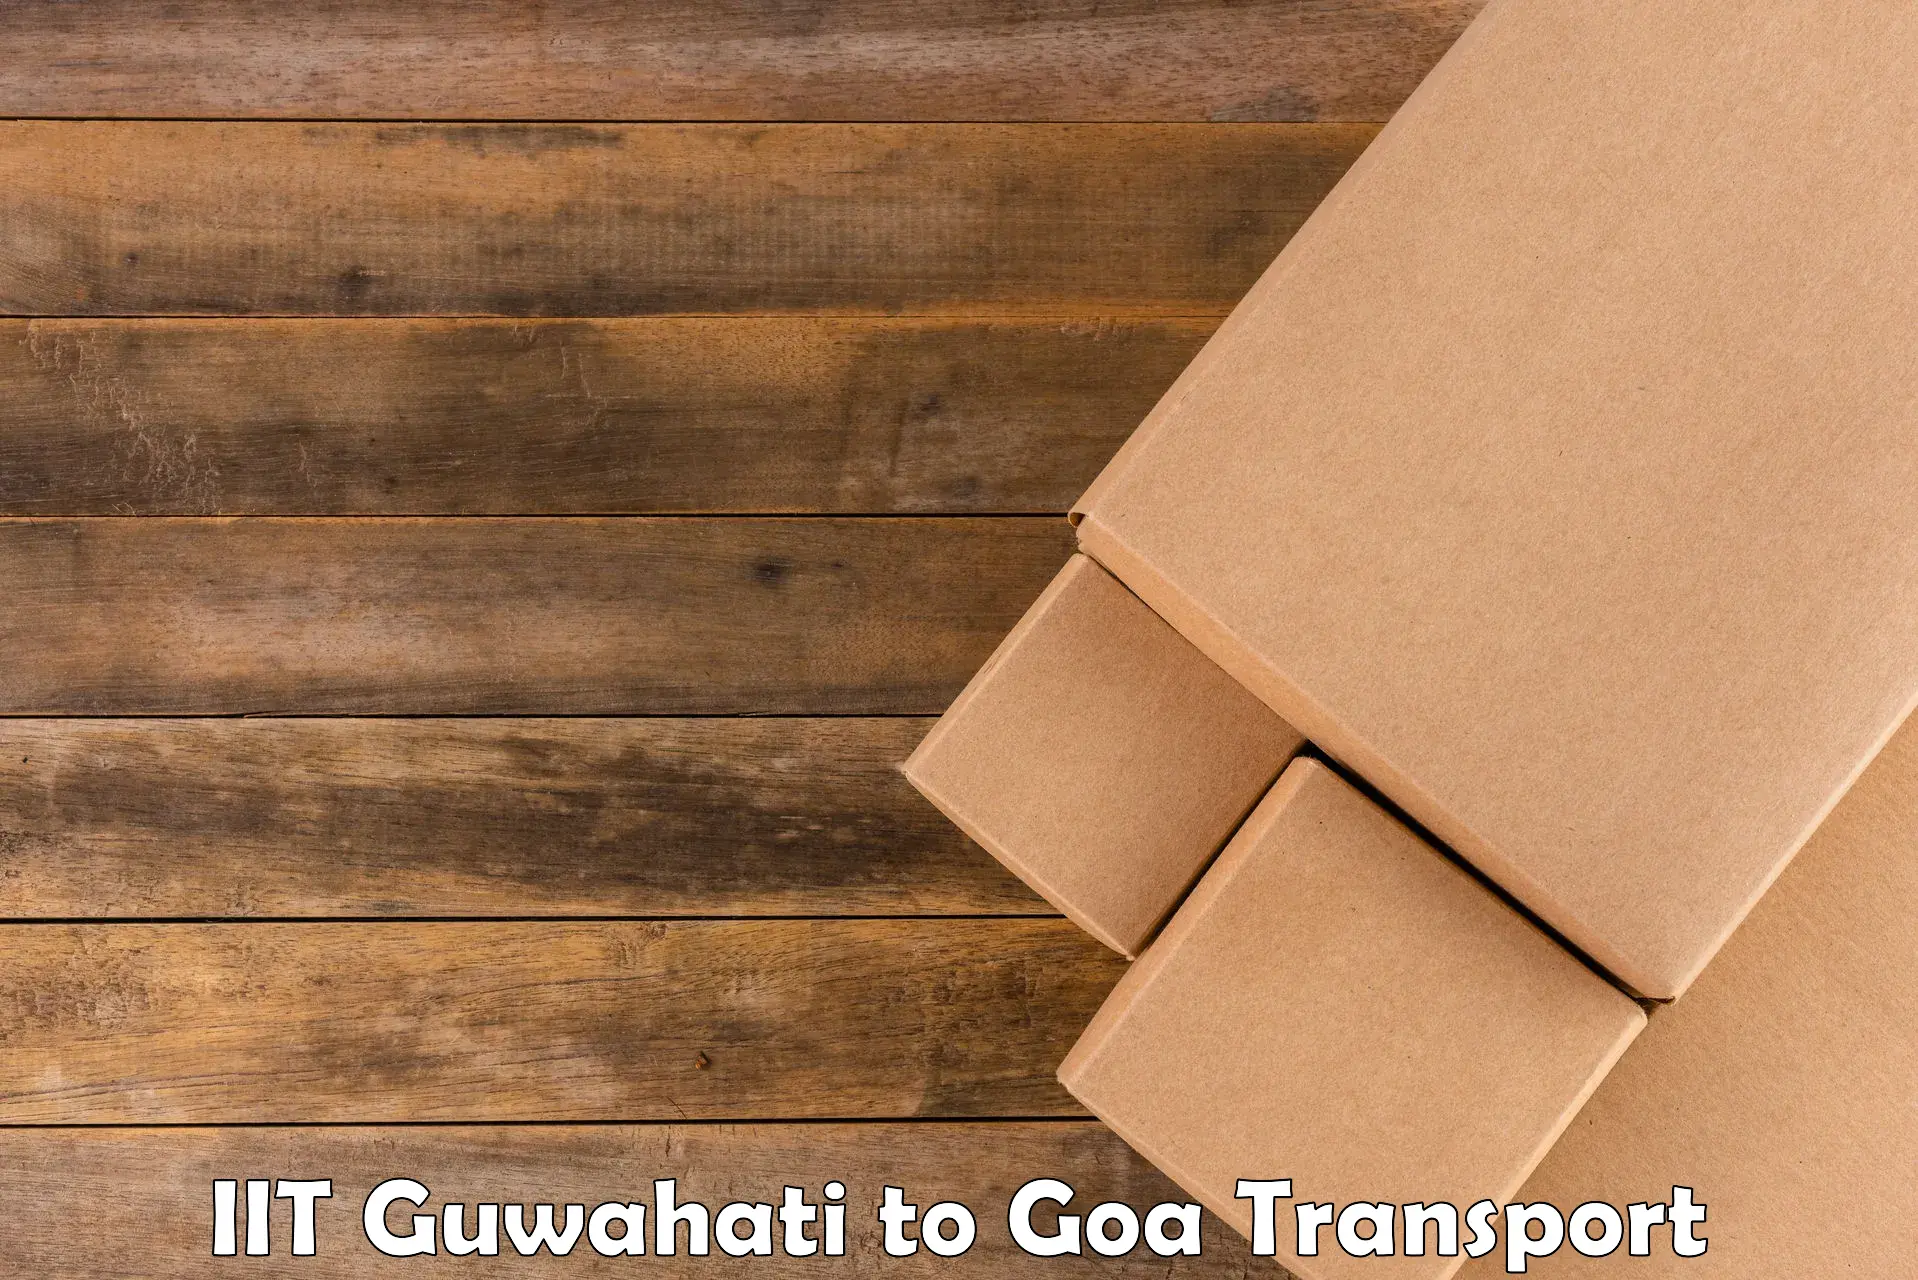 Truck transport companies in India IIT Guwahati to NIT Goa